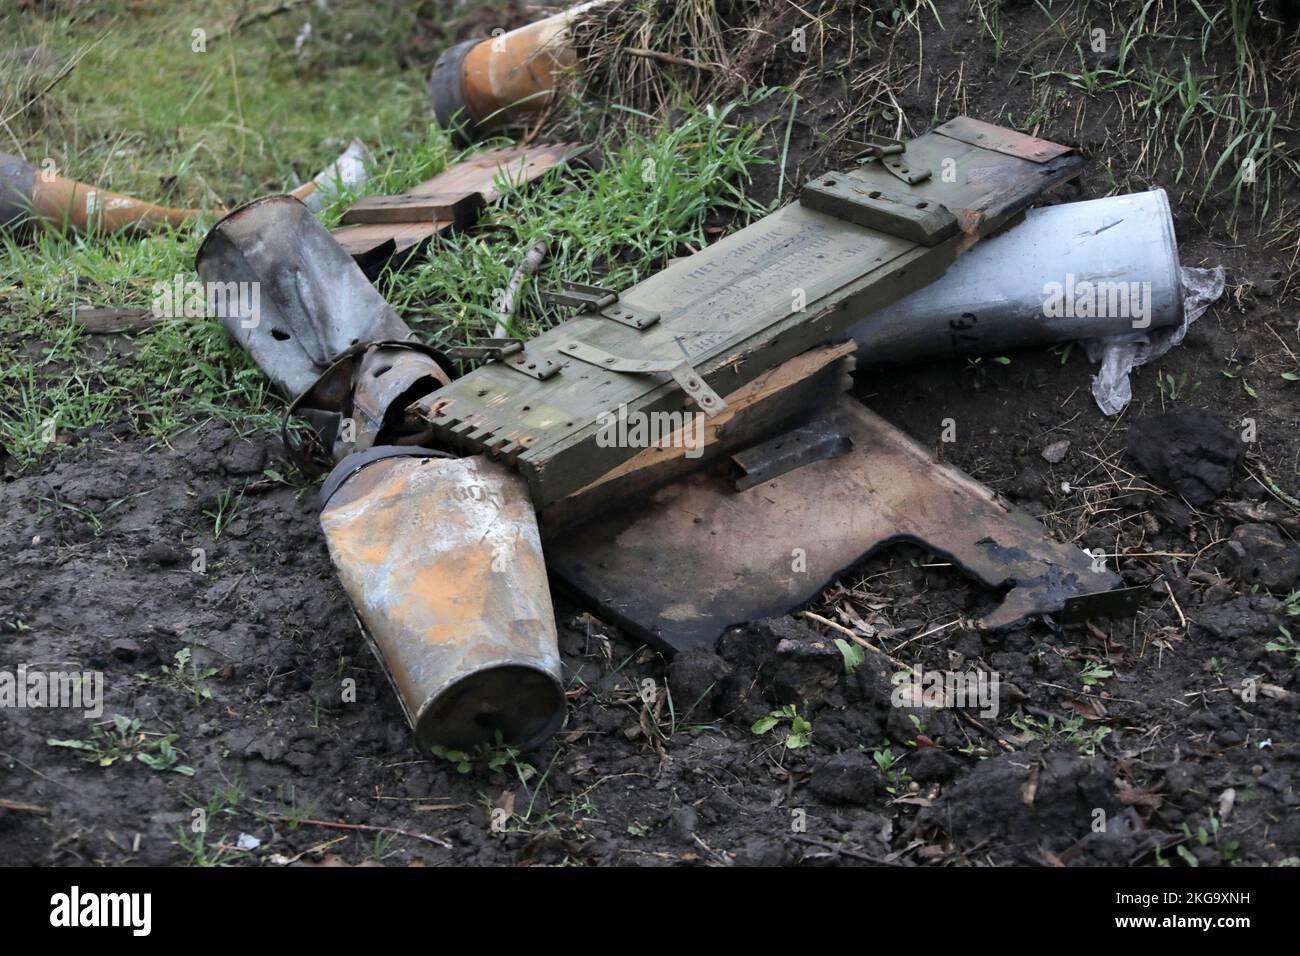 REGIONE DI KHERSON, UCRAINA - 20 NOVEMBRE 2022 - frammenti di munizioni sono visti vicino al villaggio di Pravdino liberato dagli occupanti russi dai difensori ucraini, regione di Kherson, Ucraina meridionale. Foto Stock